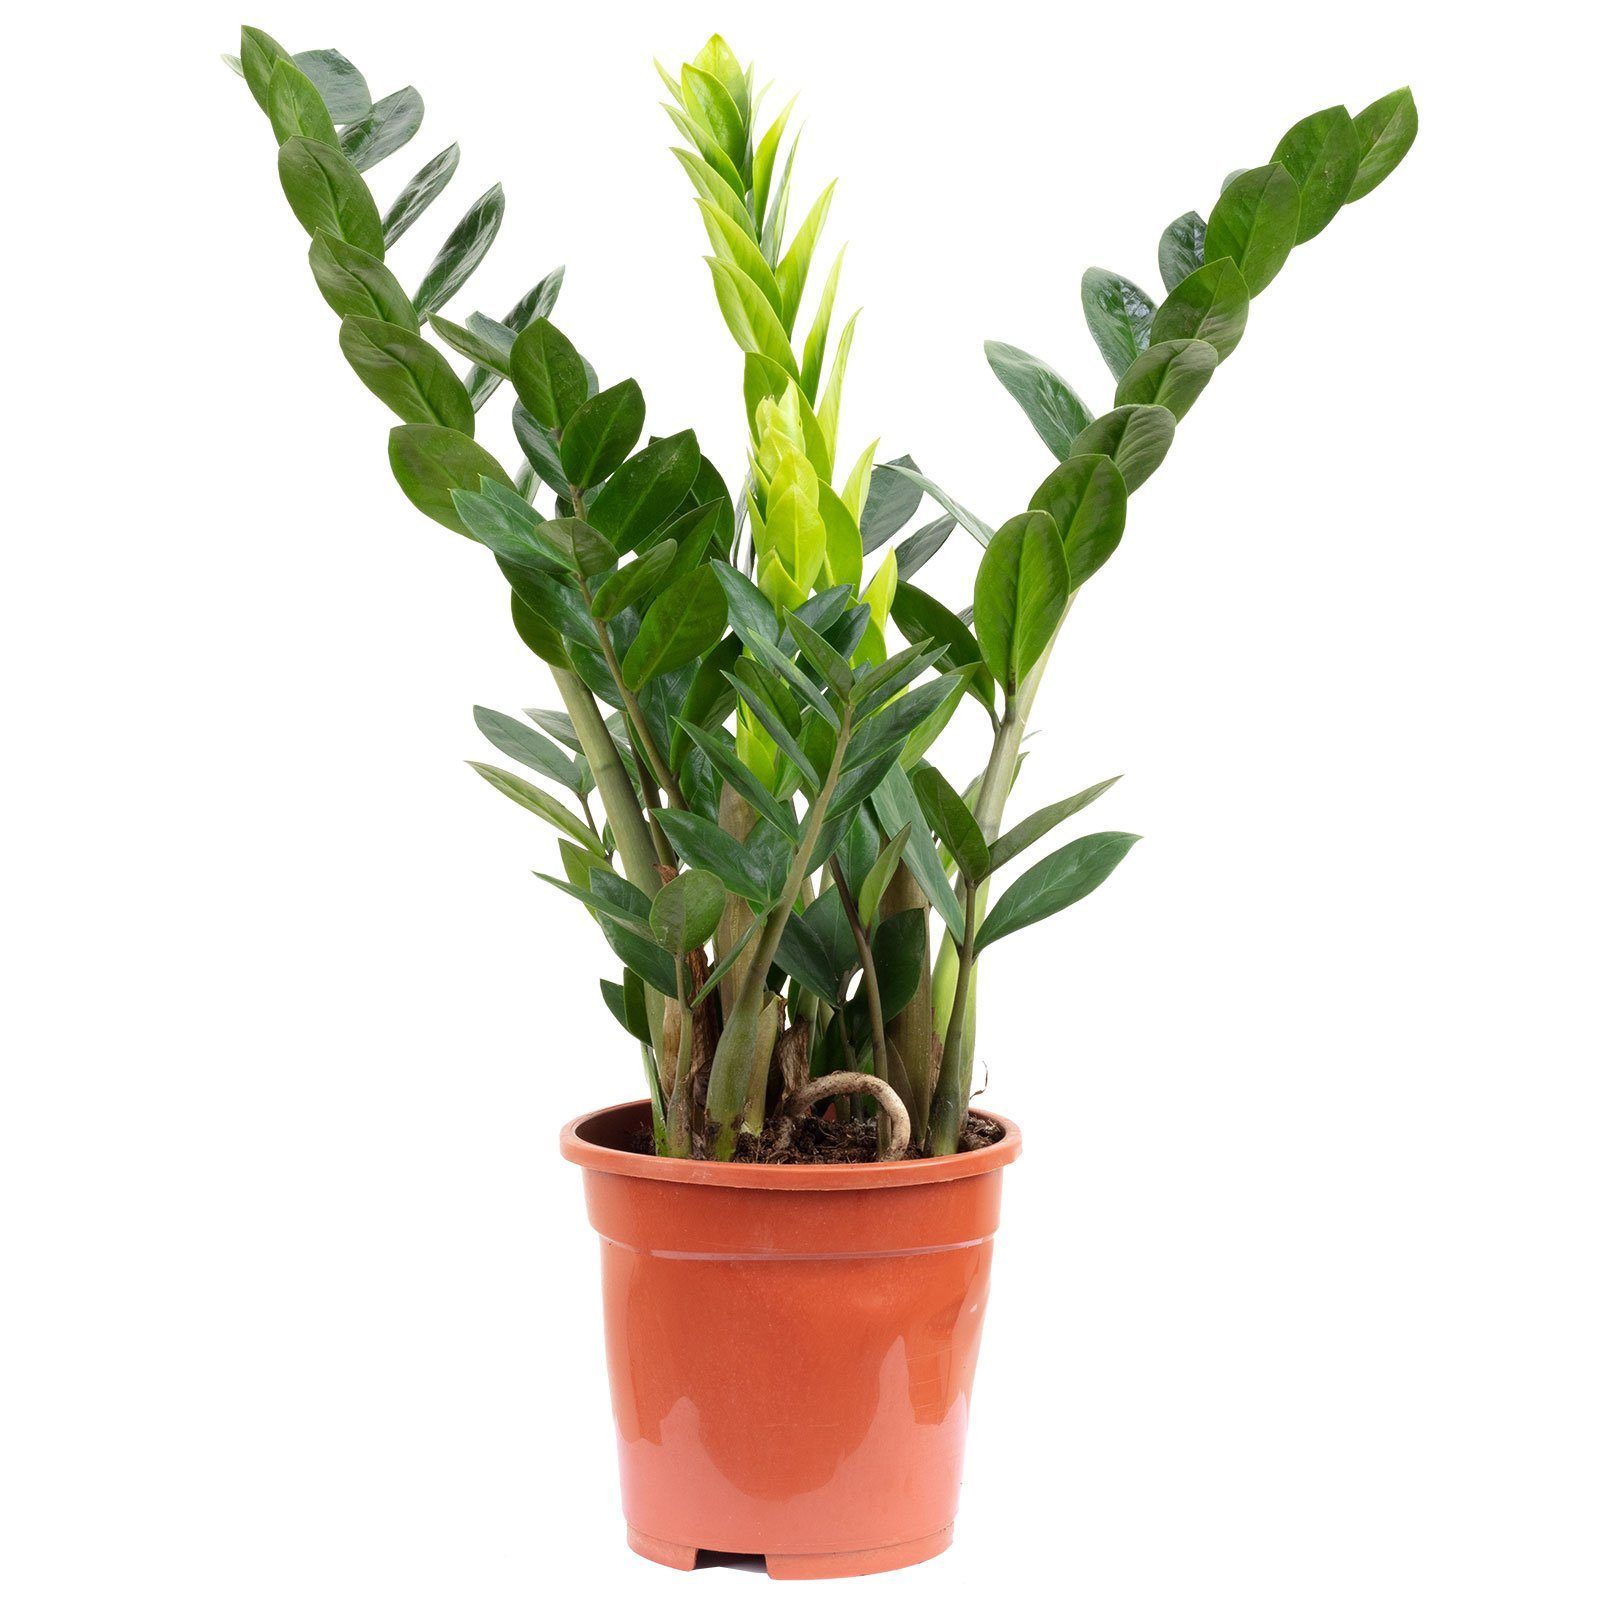 Flowerbox Blumentopf »bepflanzt mit Zimmerpflanze Glücksfeder - Zamioculcas  zamiifolia 3+ - Höhe ca. 55 cm, Topf-Ø 17 cm« online kaufen | OTTO